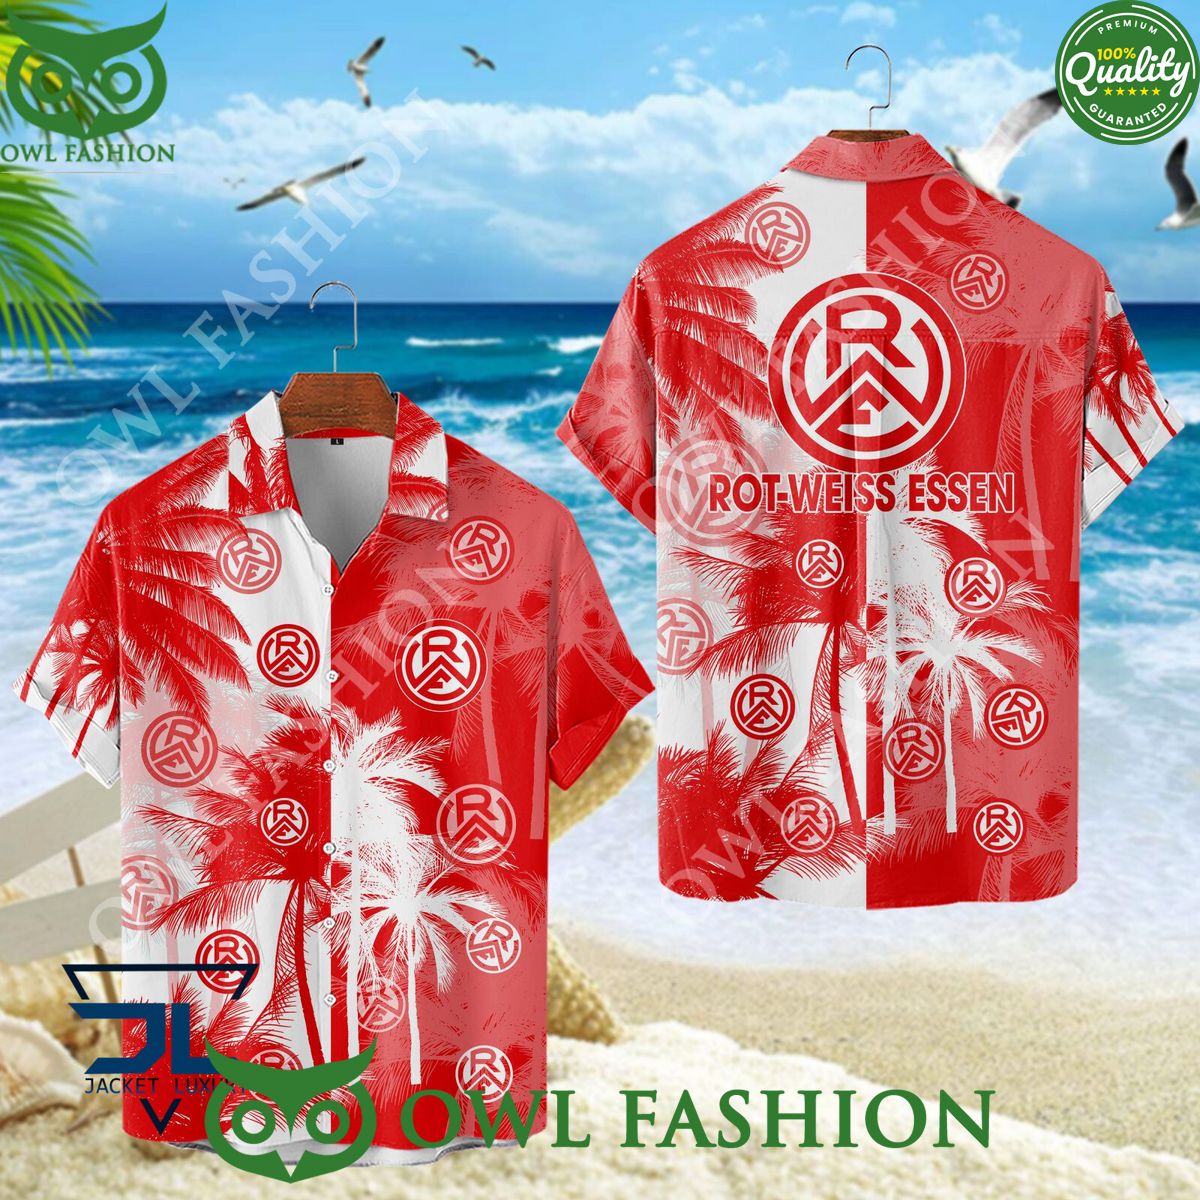 rot weiss essen german association football team hawaiian shirt 1 49tGF.jpg